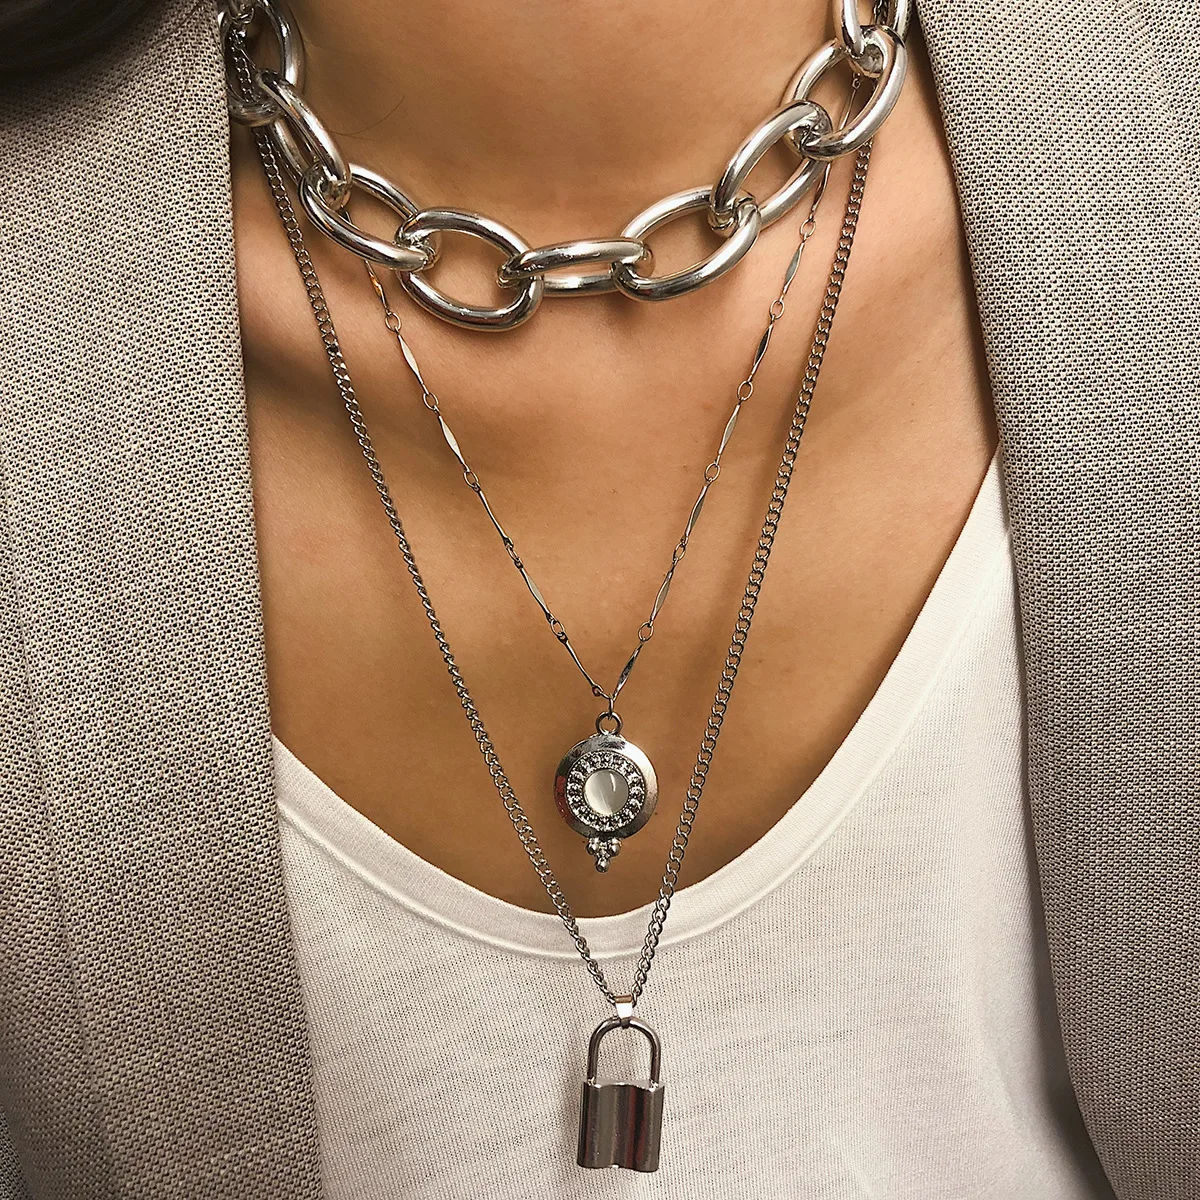 AE-CANFLY, Европейское массивное металлическое ожерелье в стиле панк с цепочкой и жемчугом, женское простое многослойное длинное ожерелье с кристаллами, аксессуары - Окраска металла: 2284 silver